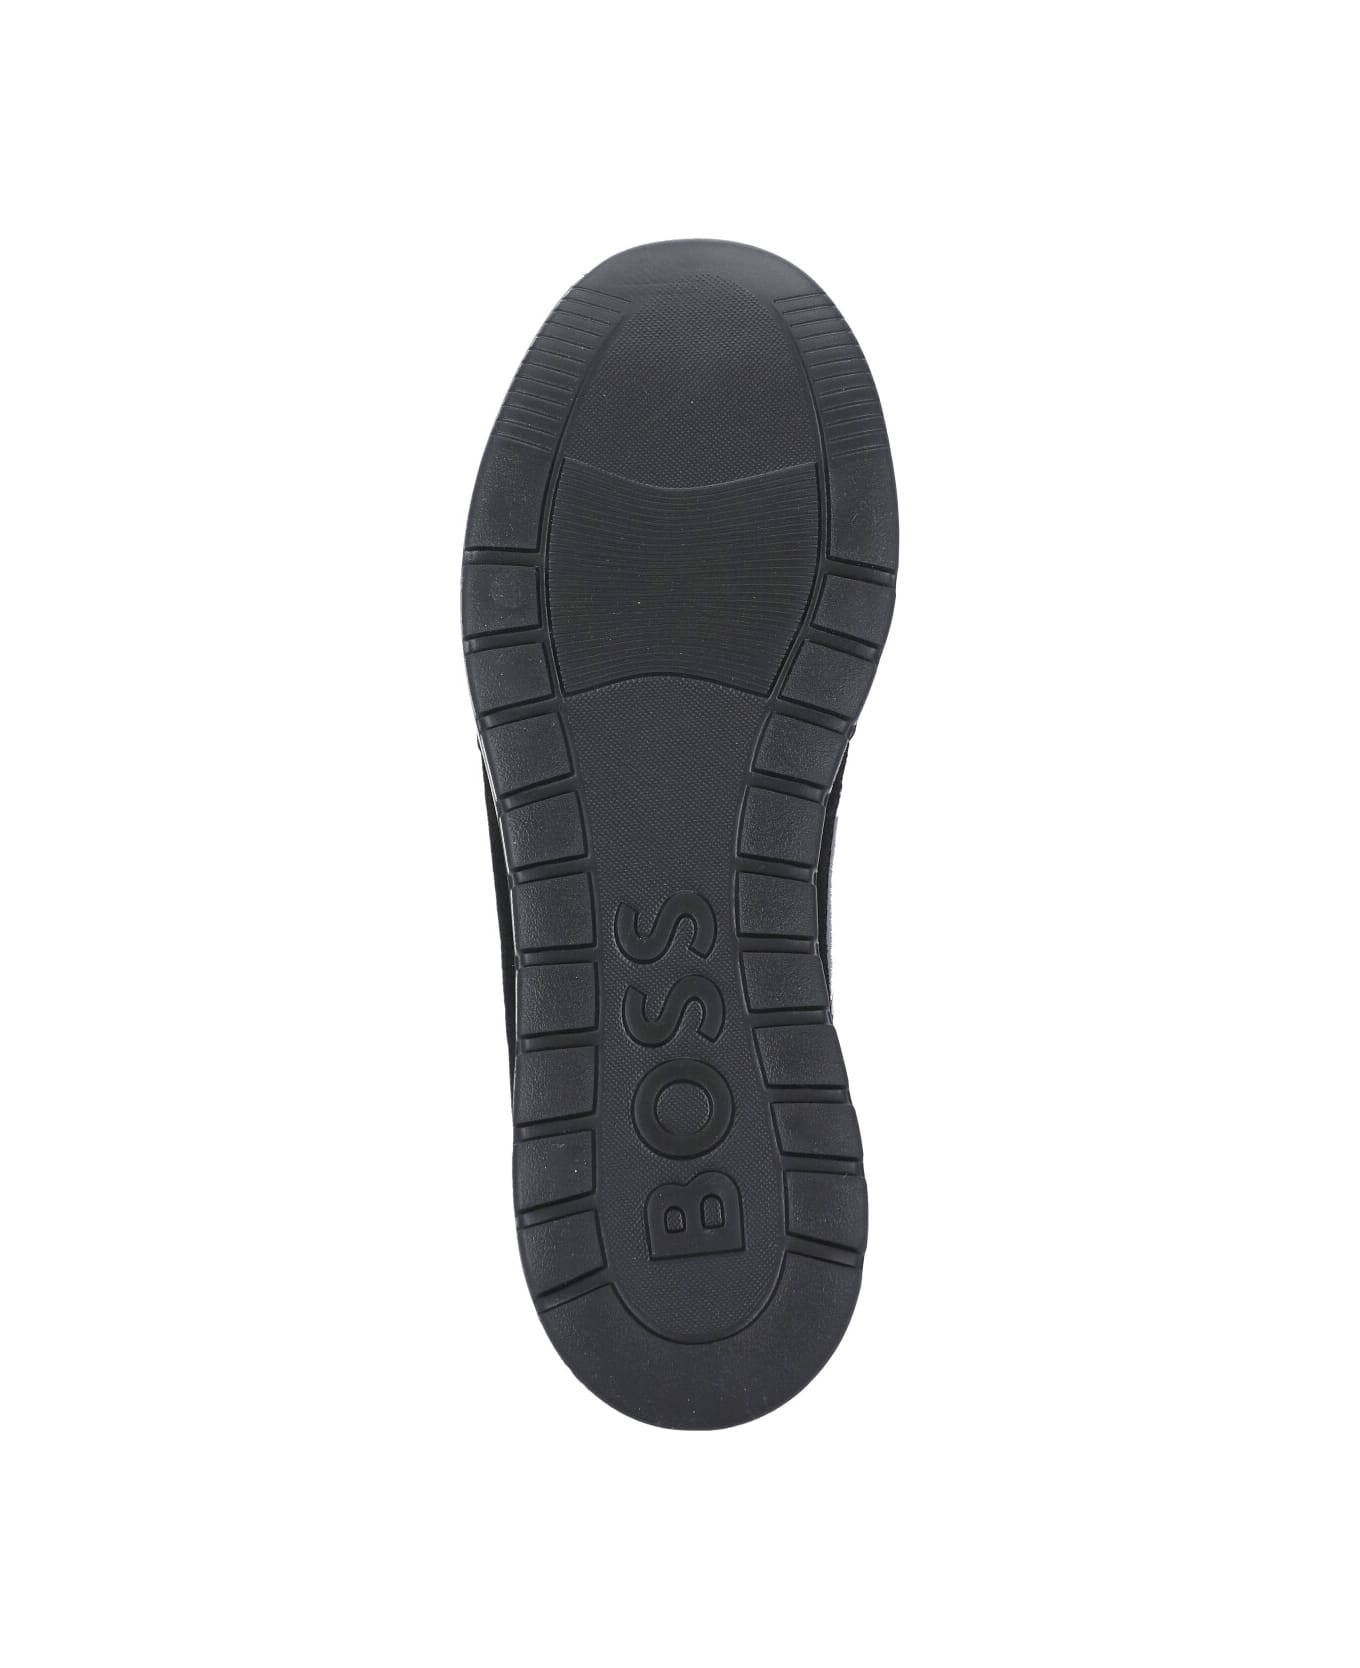 Hugo Boss Jace Runn Imme Sneakers - Black